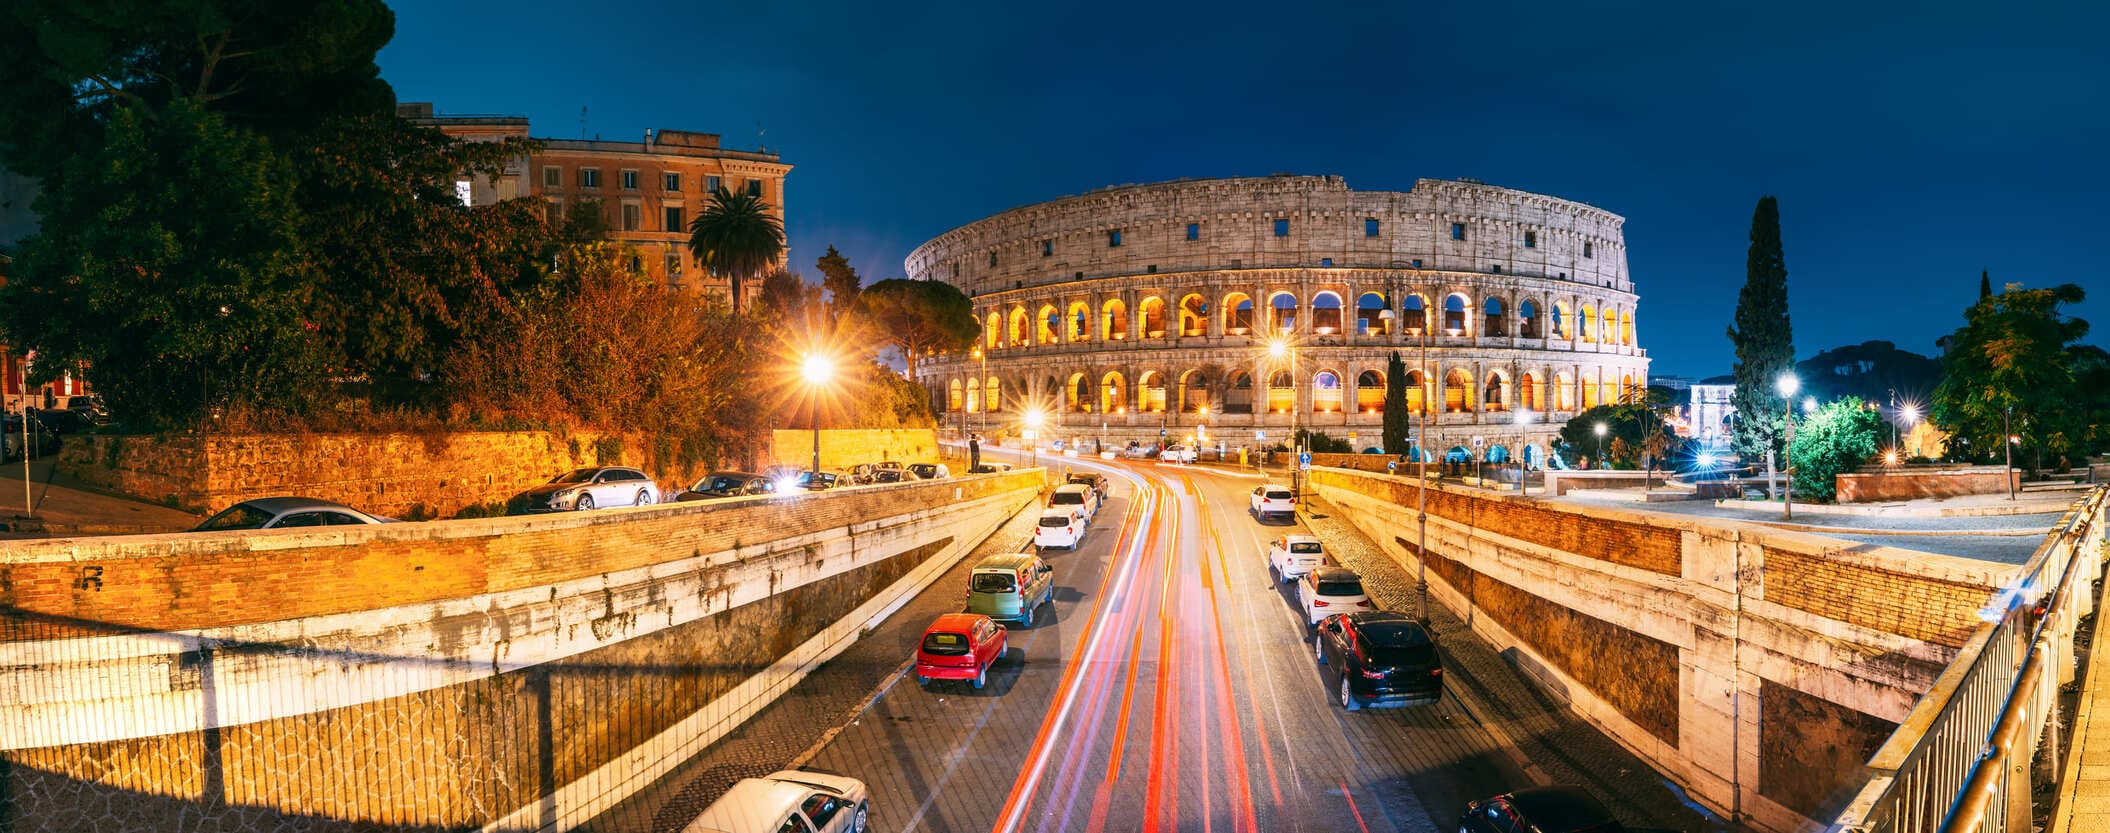 Fotografía de las calles iluminadas y el Coliseo en Roma Italia al atardecer. Entorno, luces, coches, atardecer.